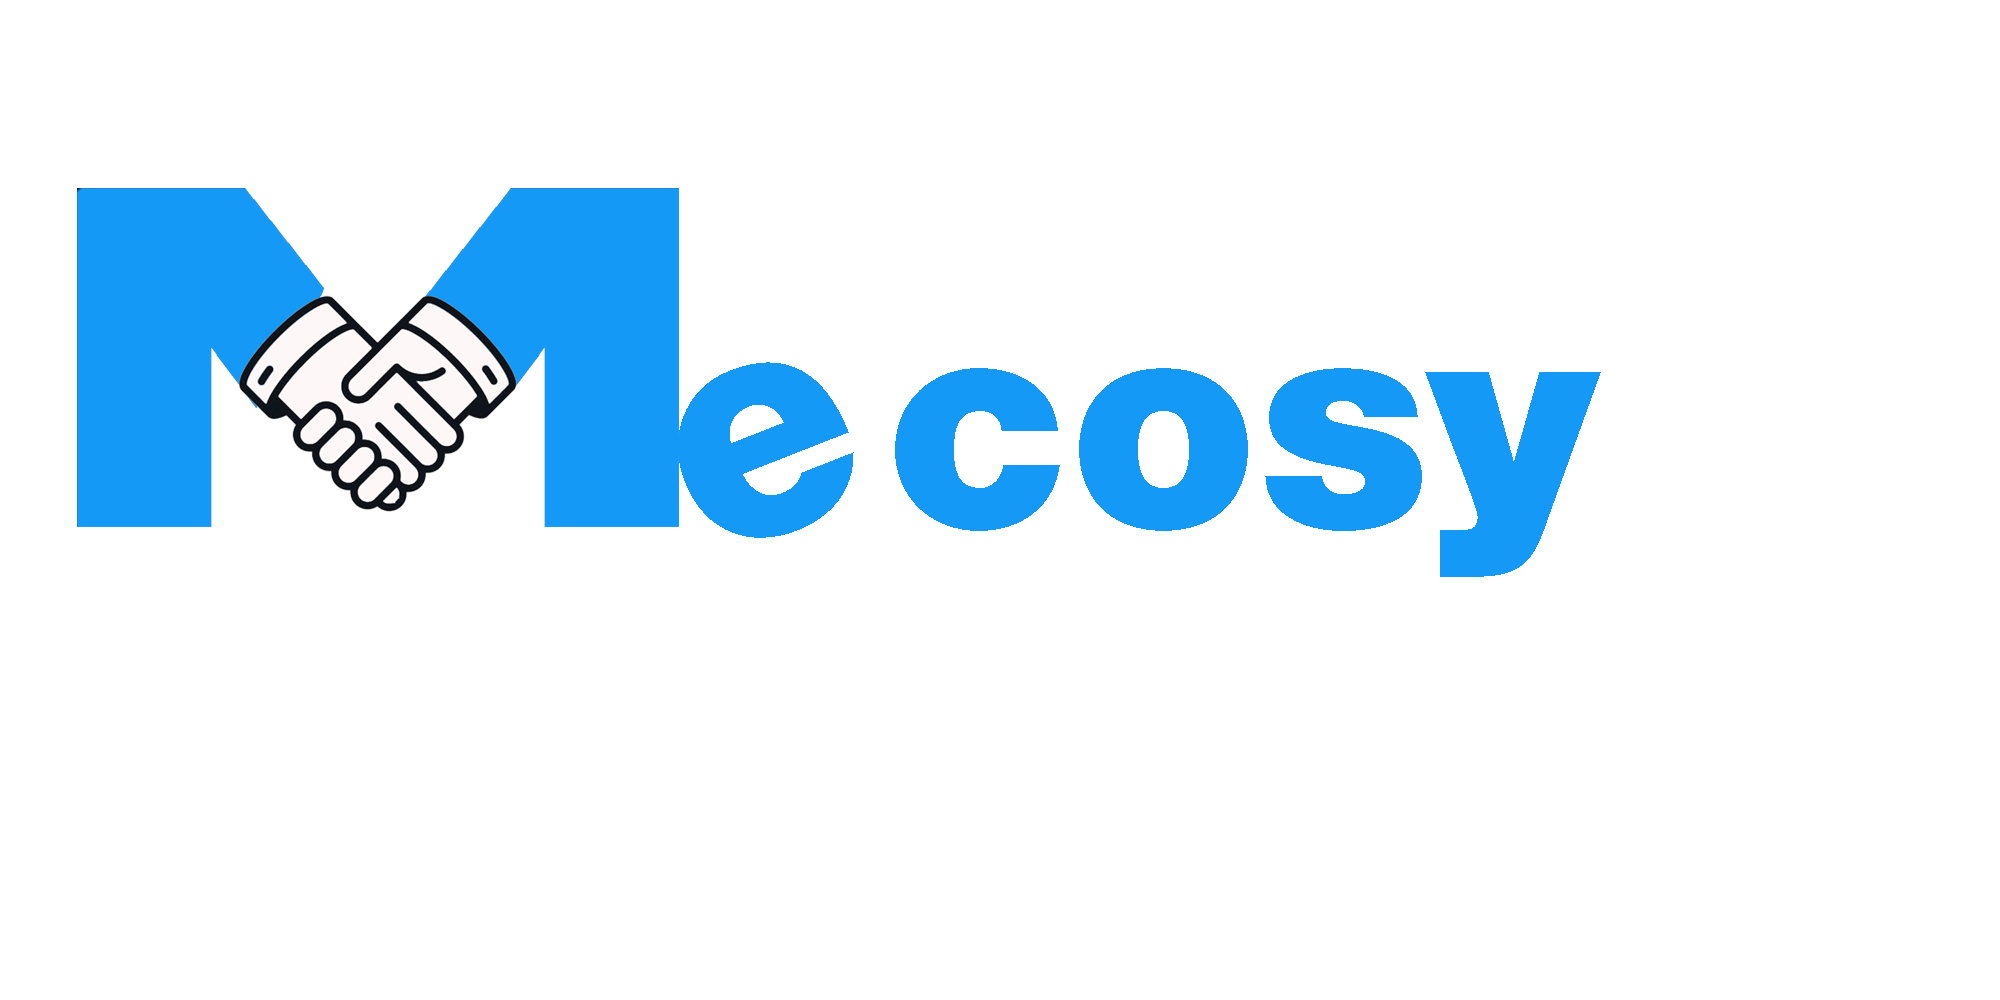 Mecosy